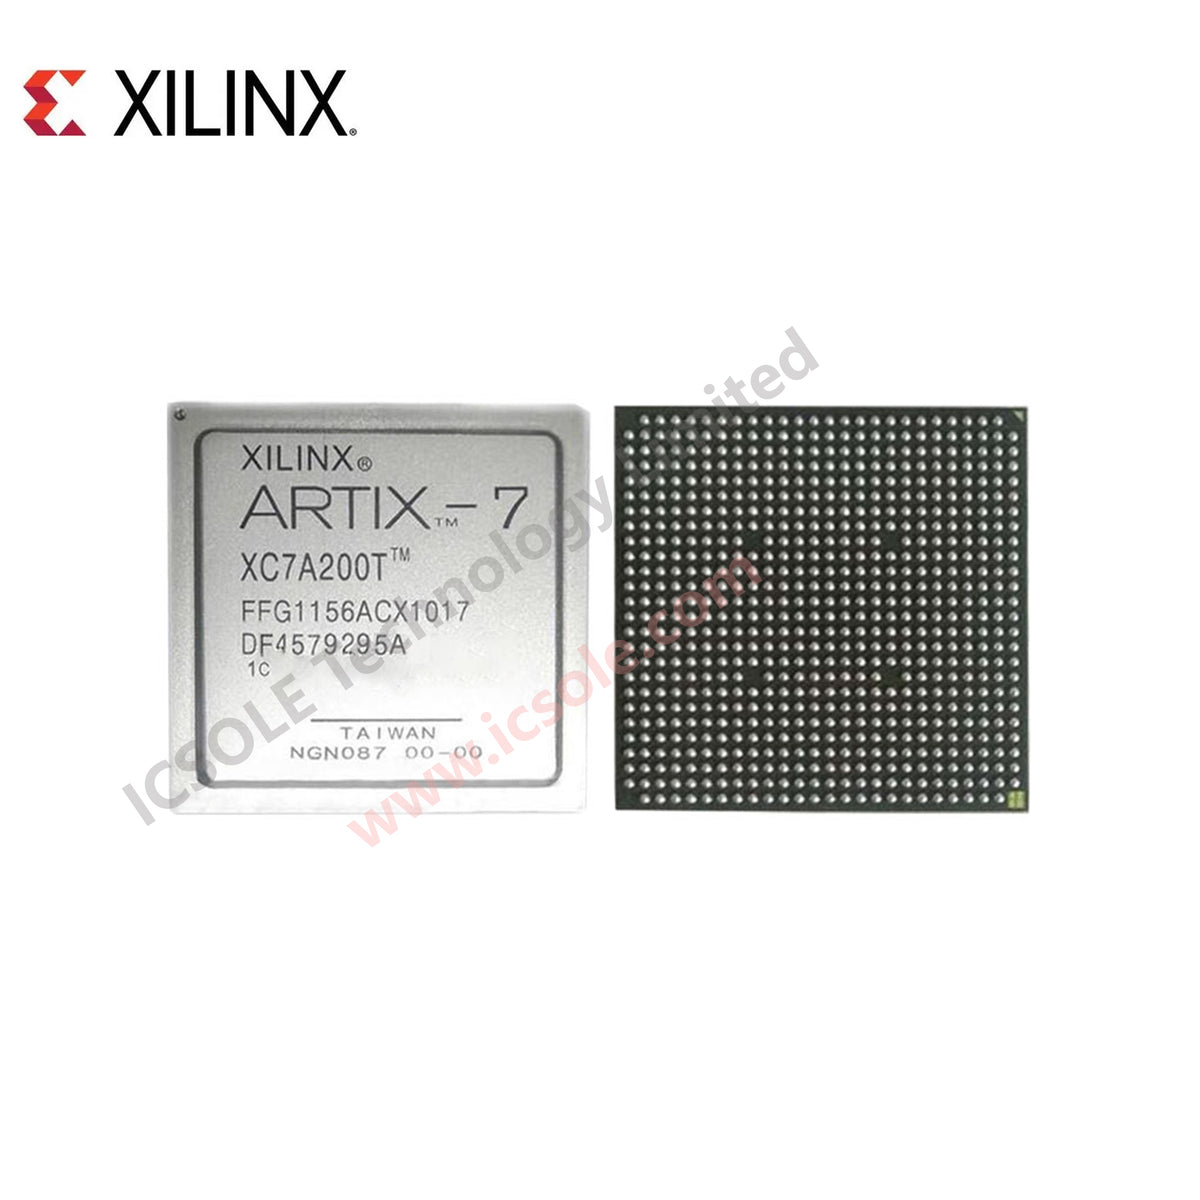 Xilinx XC7A200T-1FFG1156C